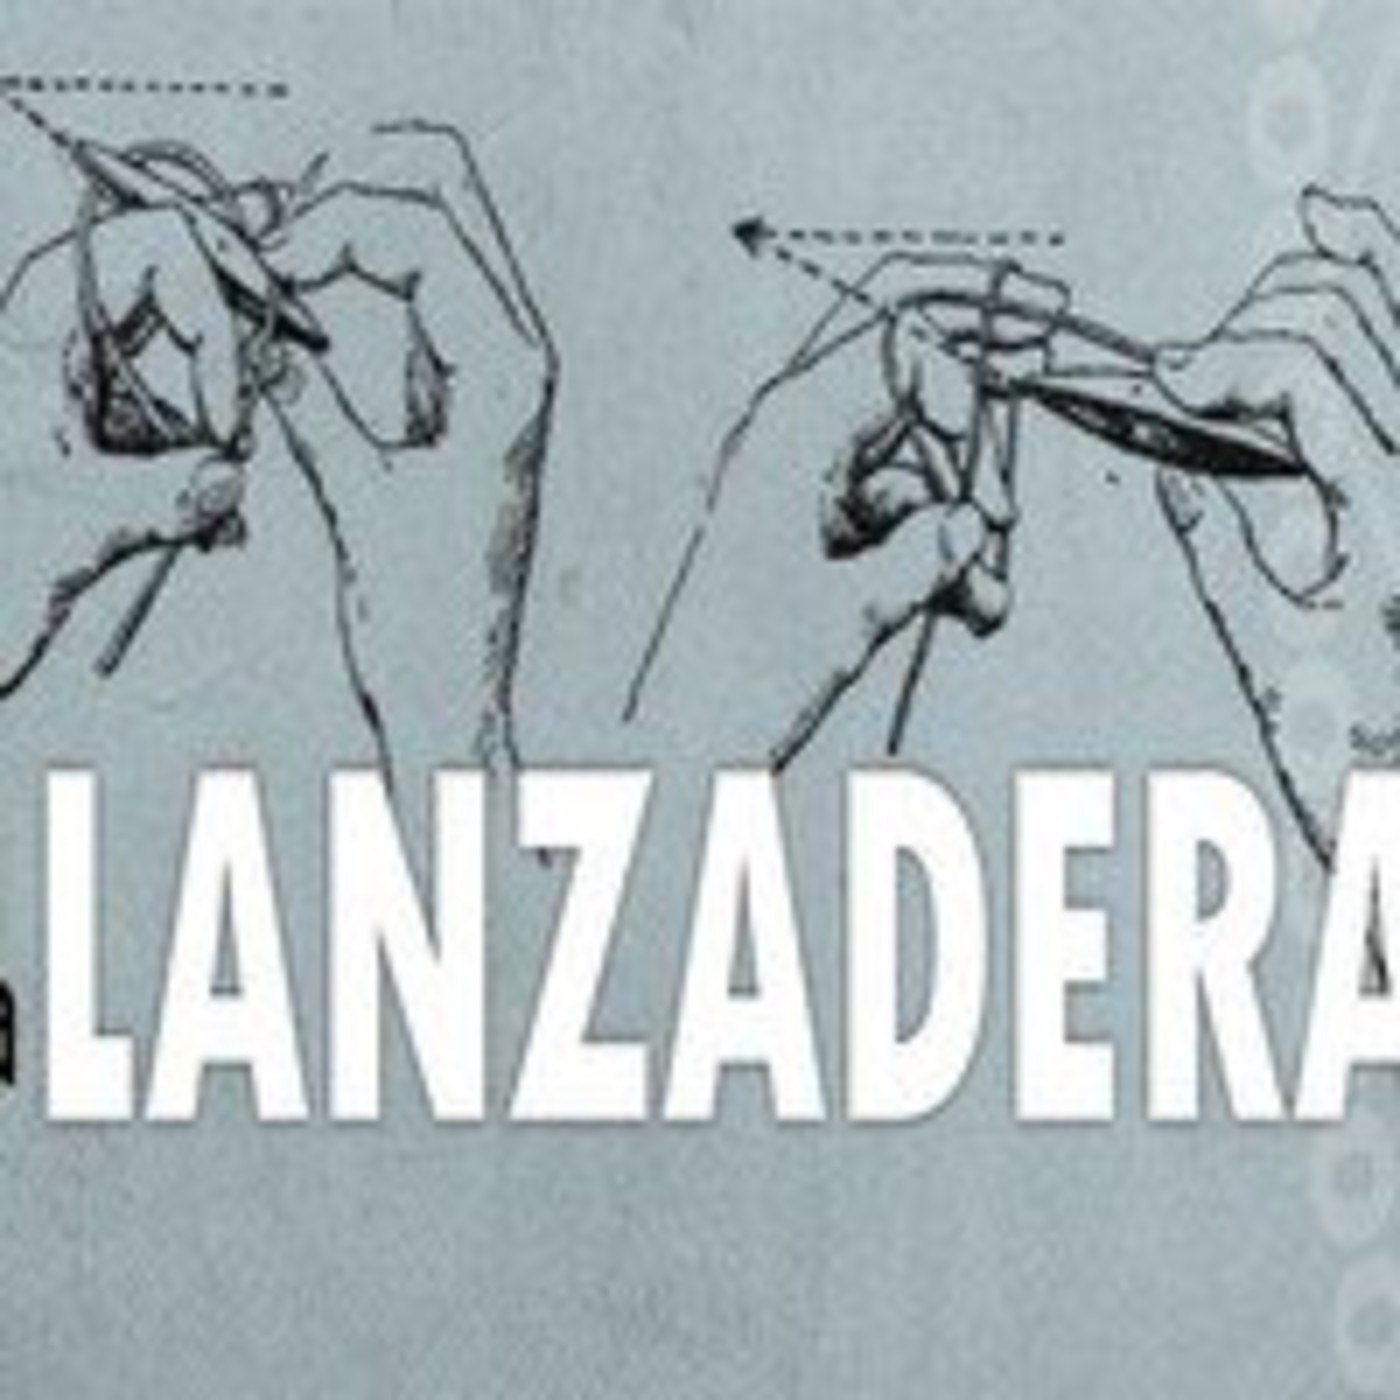 La Lanzadera - 03/1415 - 22/04/2015